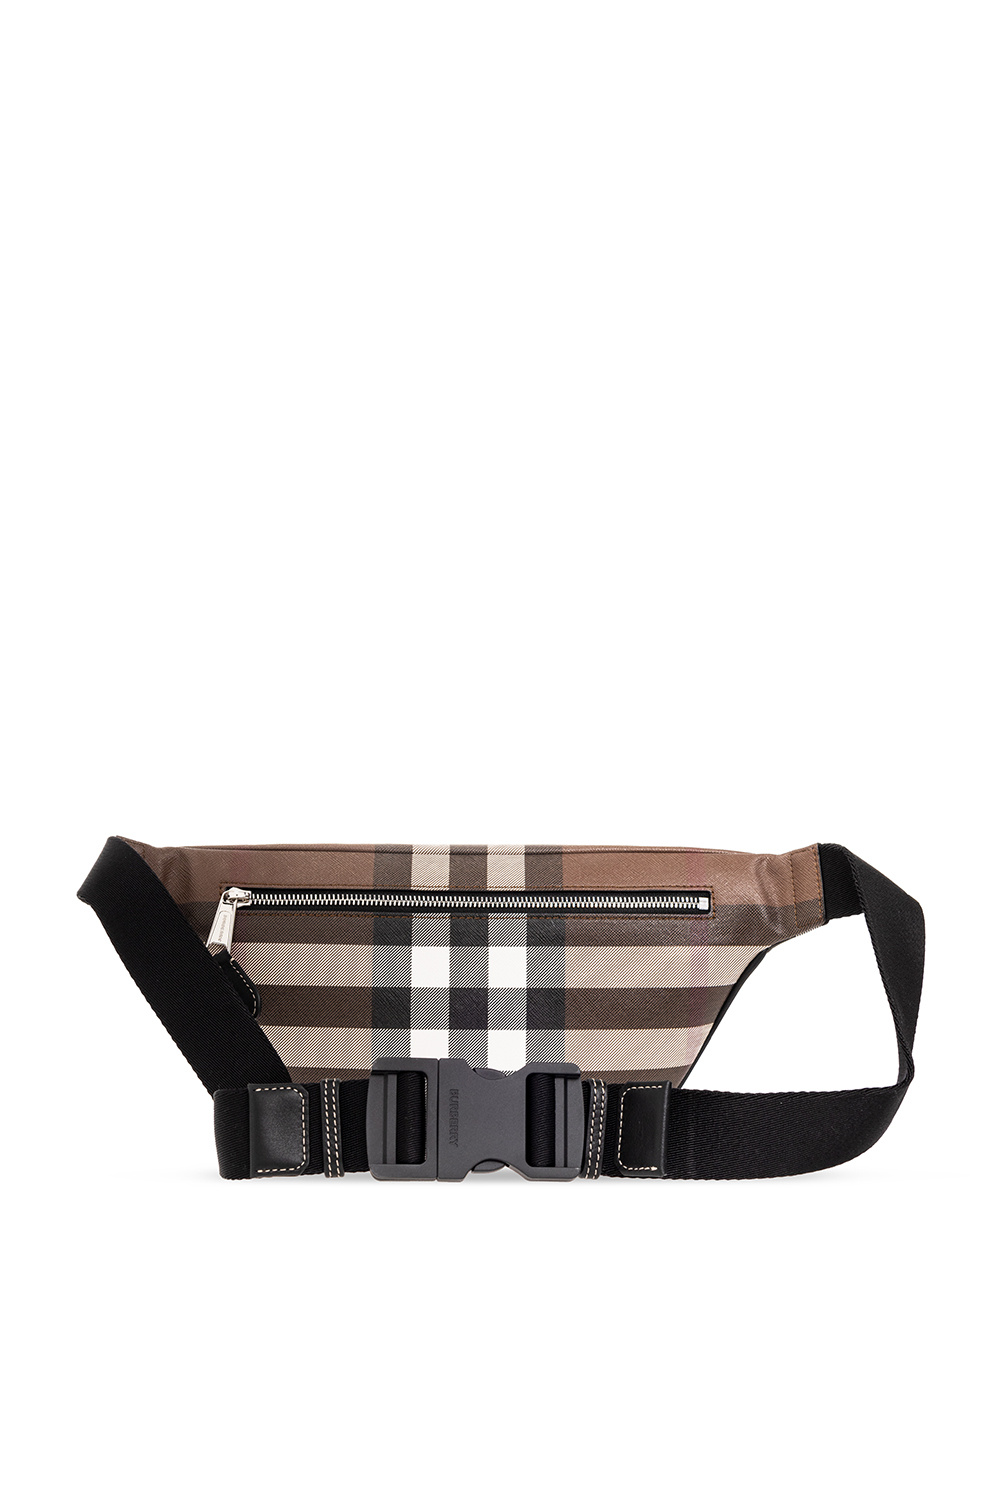 Shop Burberry Cason Belt Bag (80732671) by jolisourire